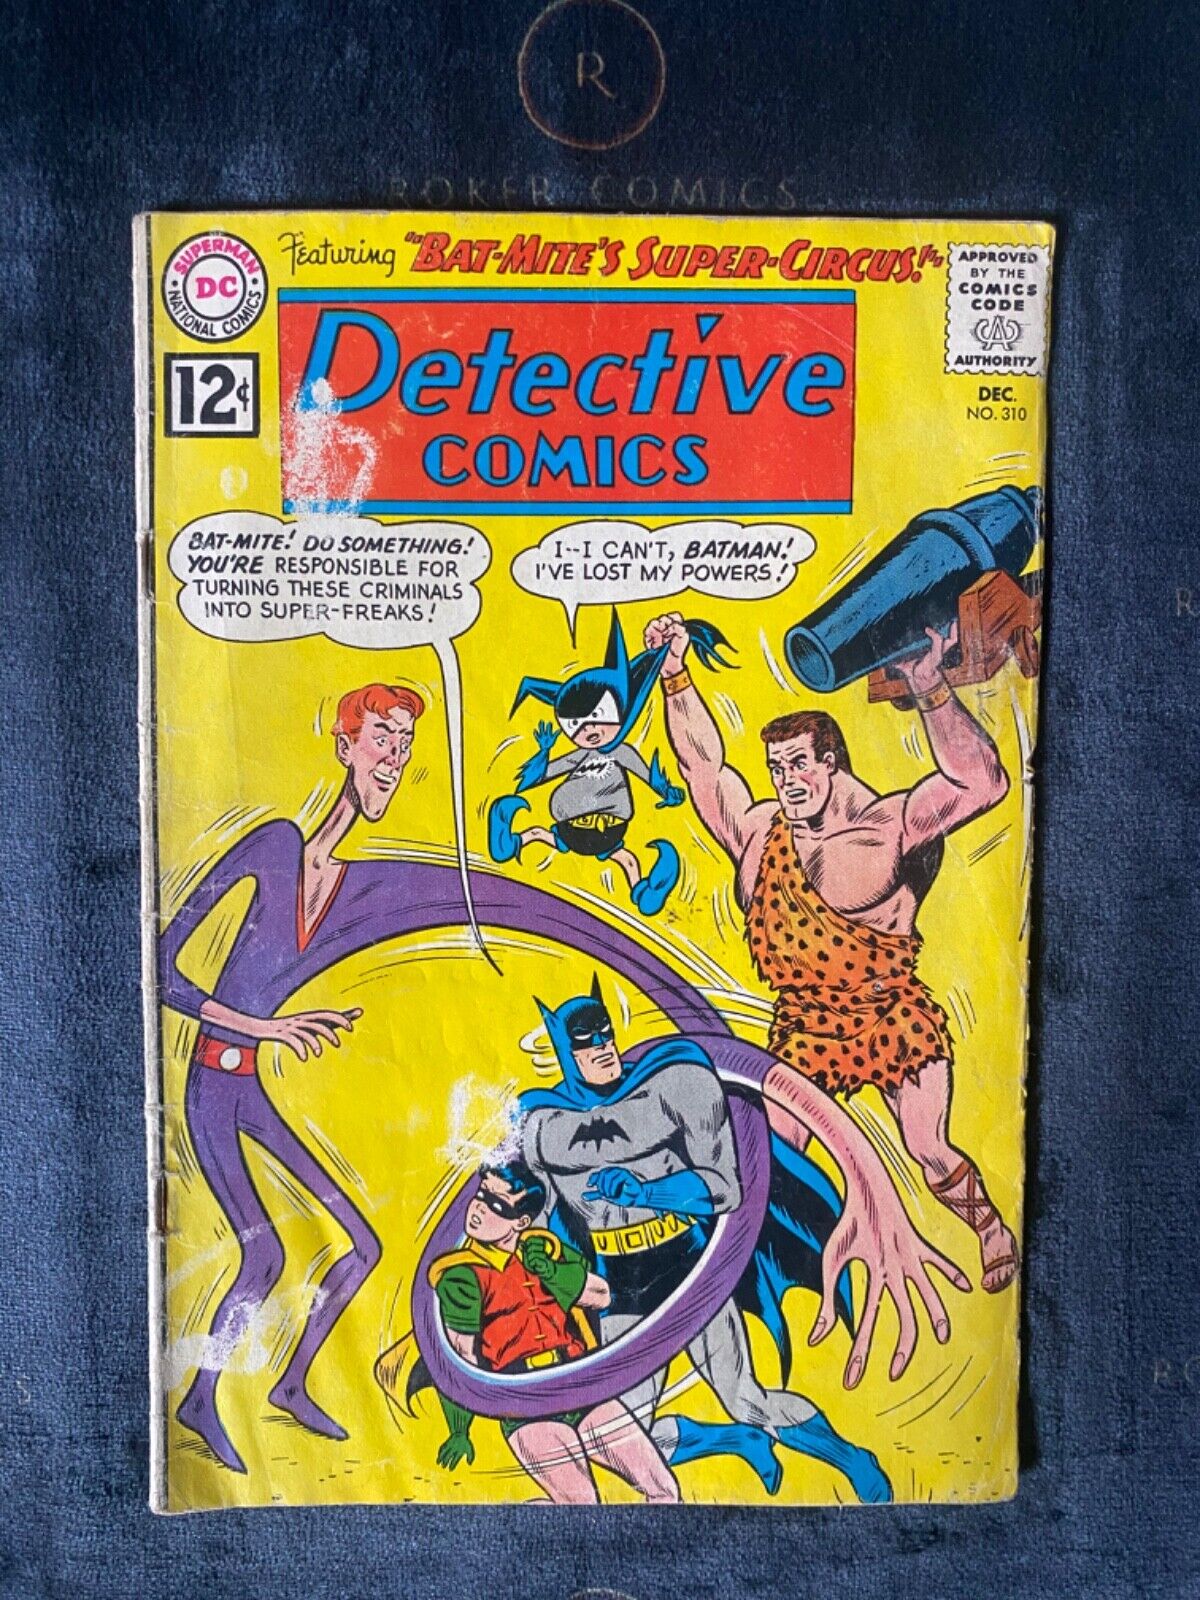 Detective Comics #310 - Low Grade Silver Batman / Bat-Mite